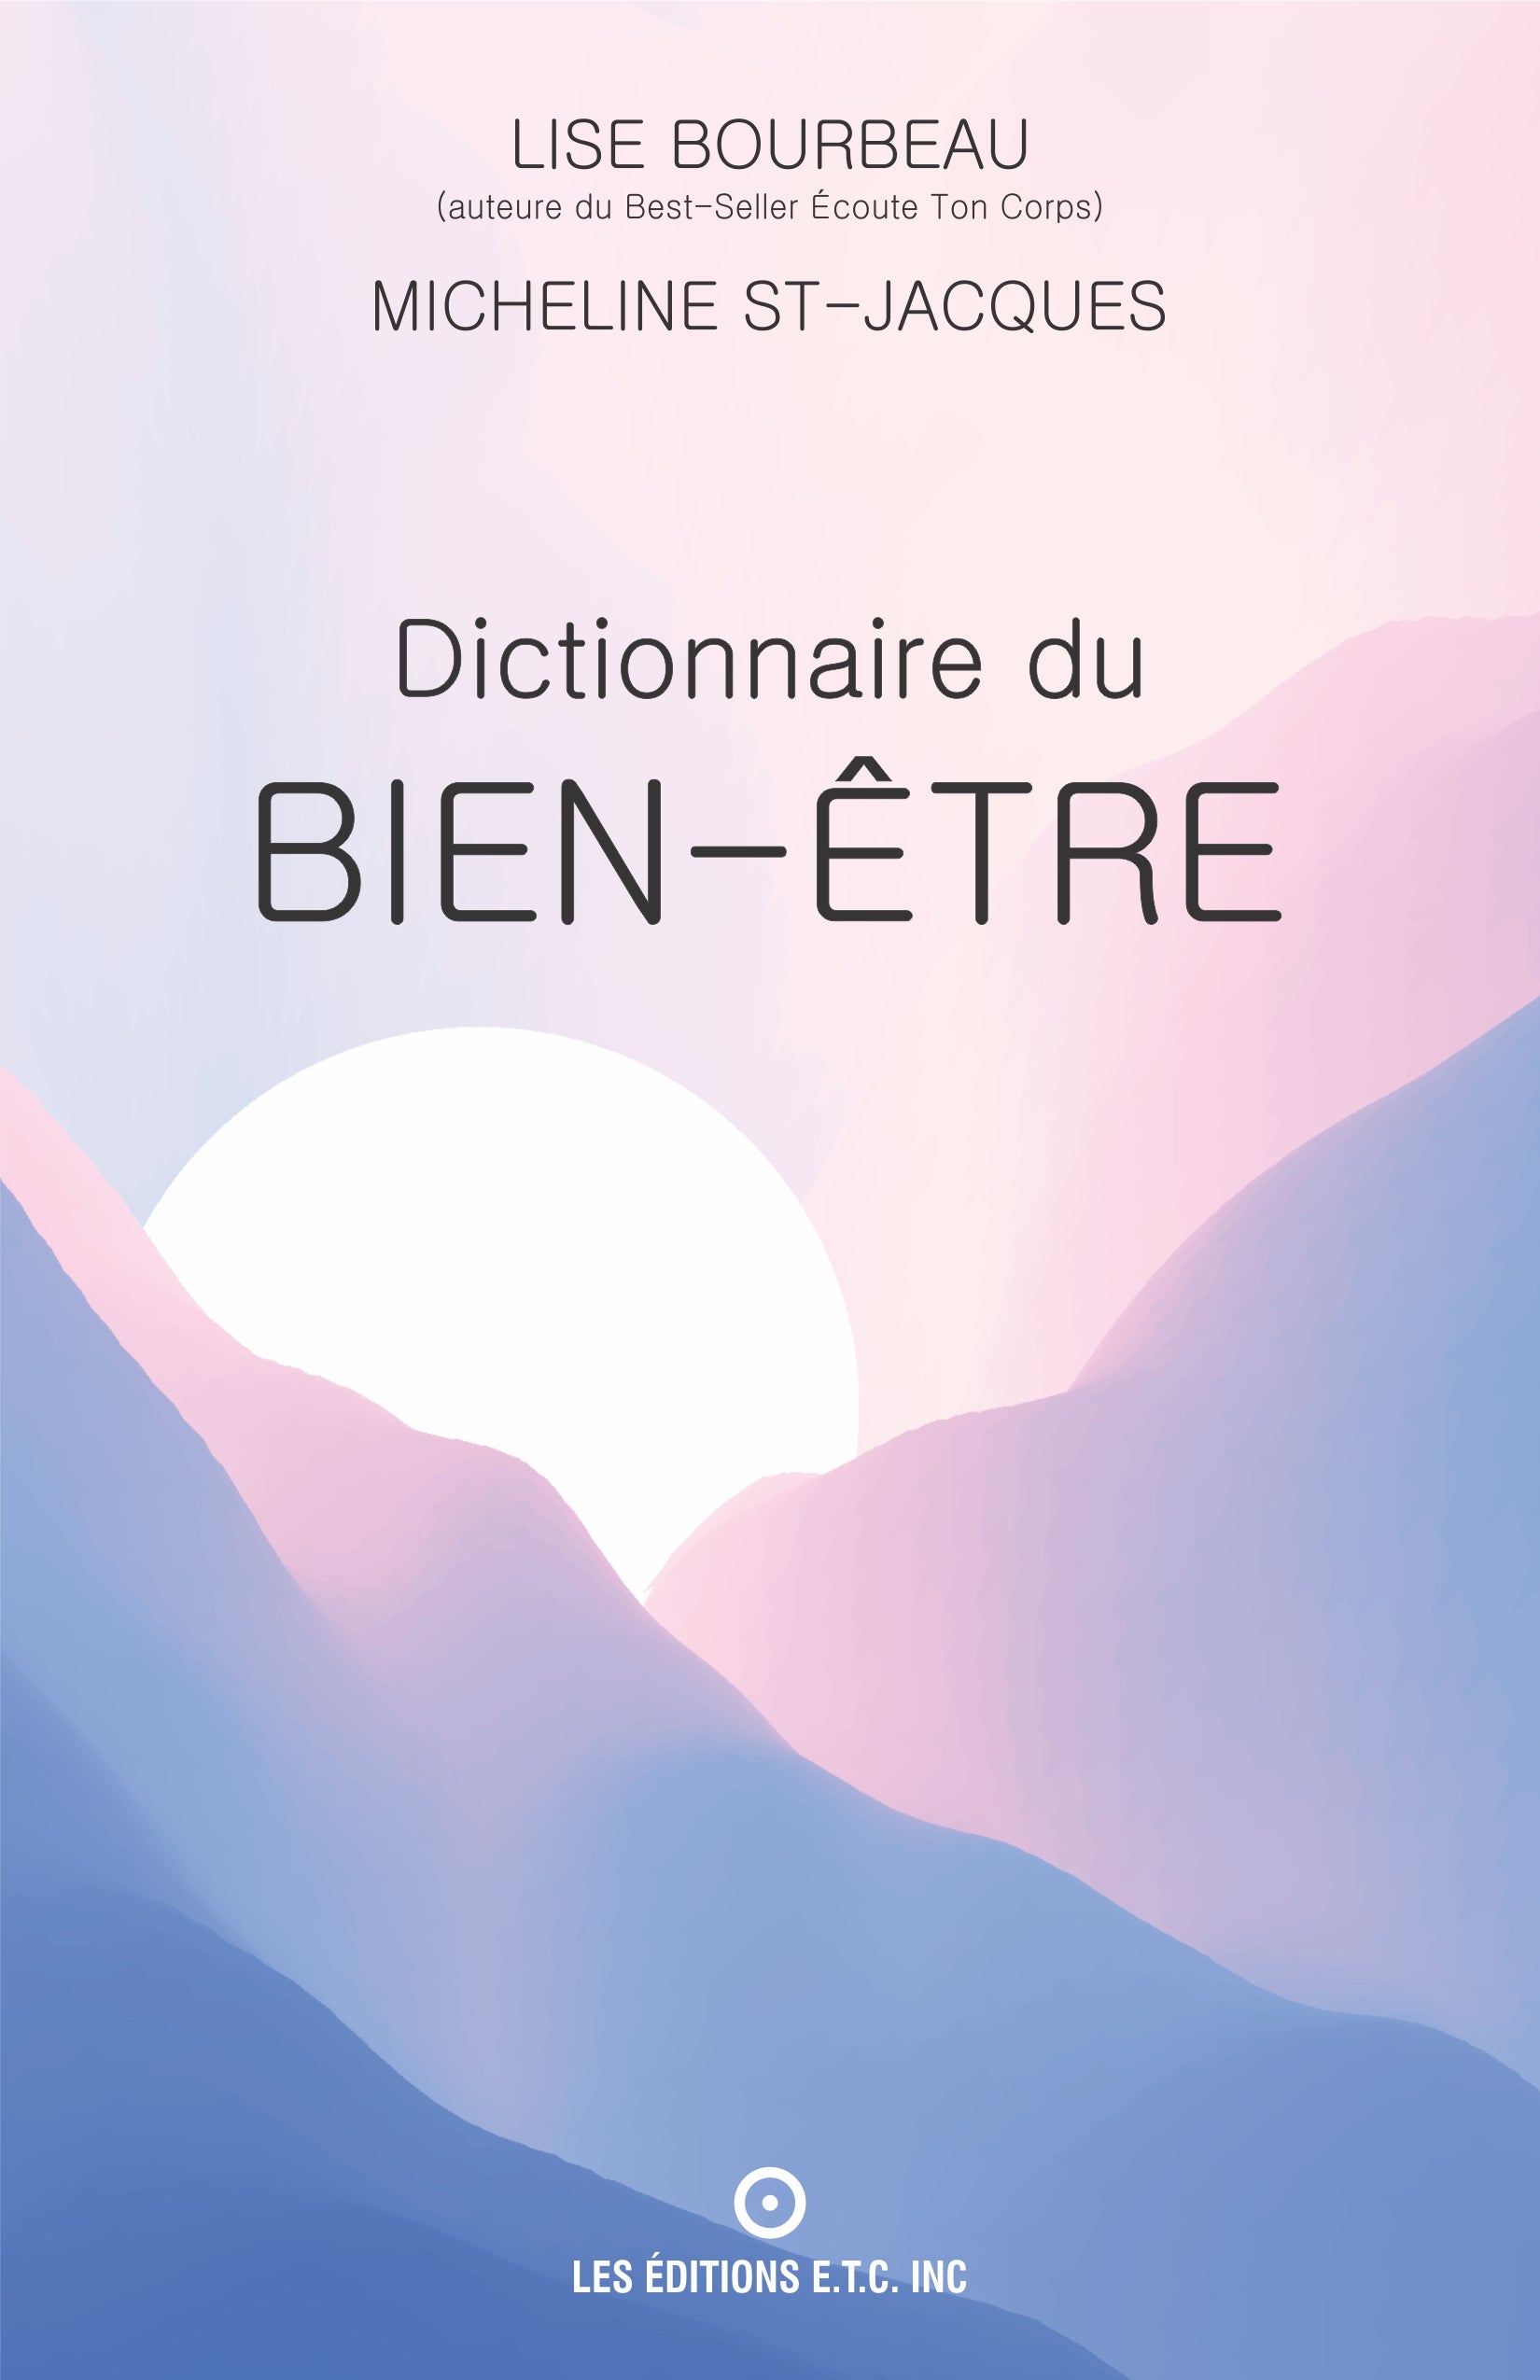 Dictionnaire du bien-être – ecoutetoncorps